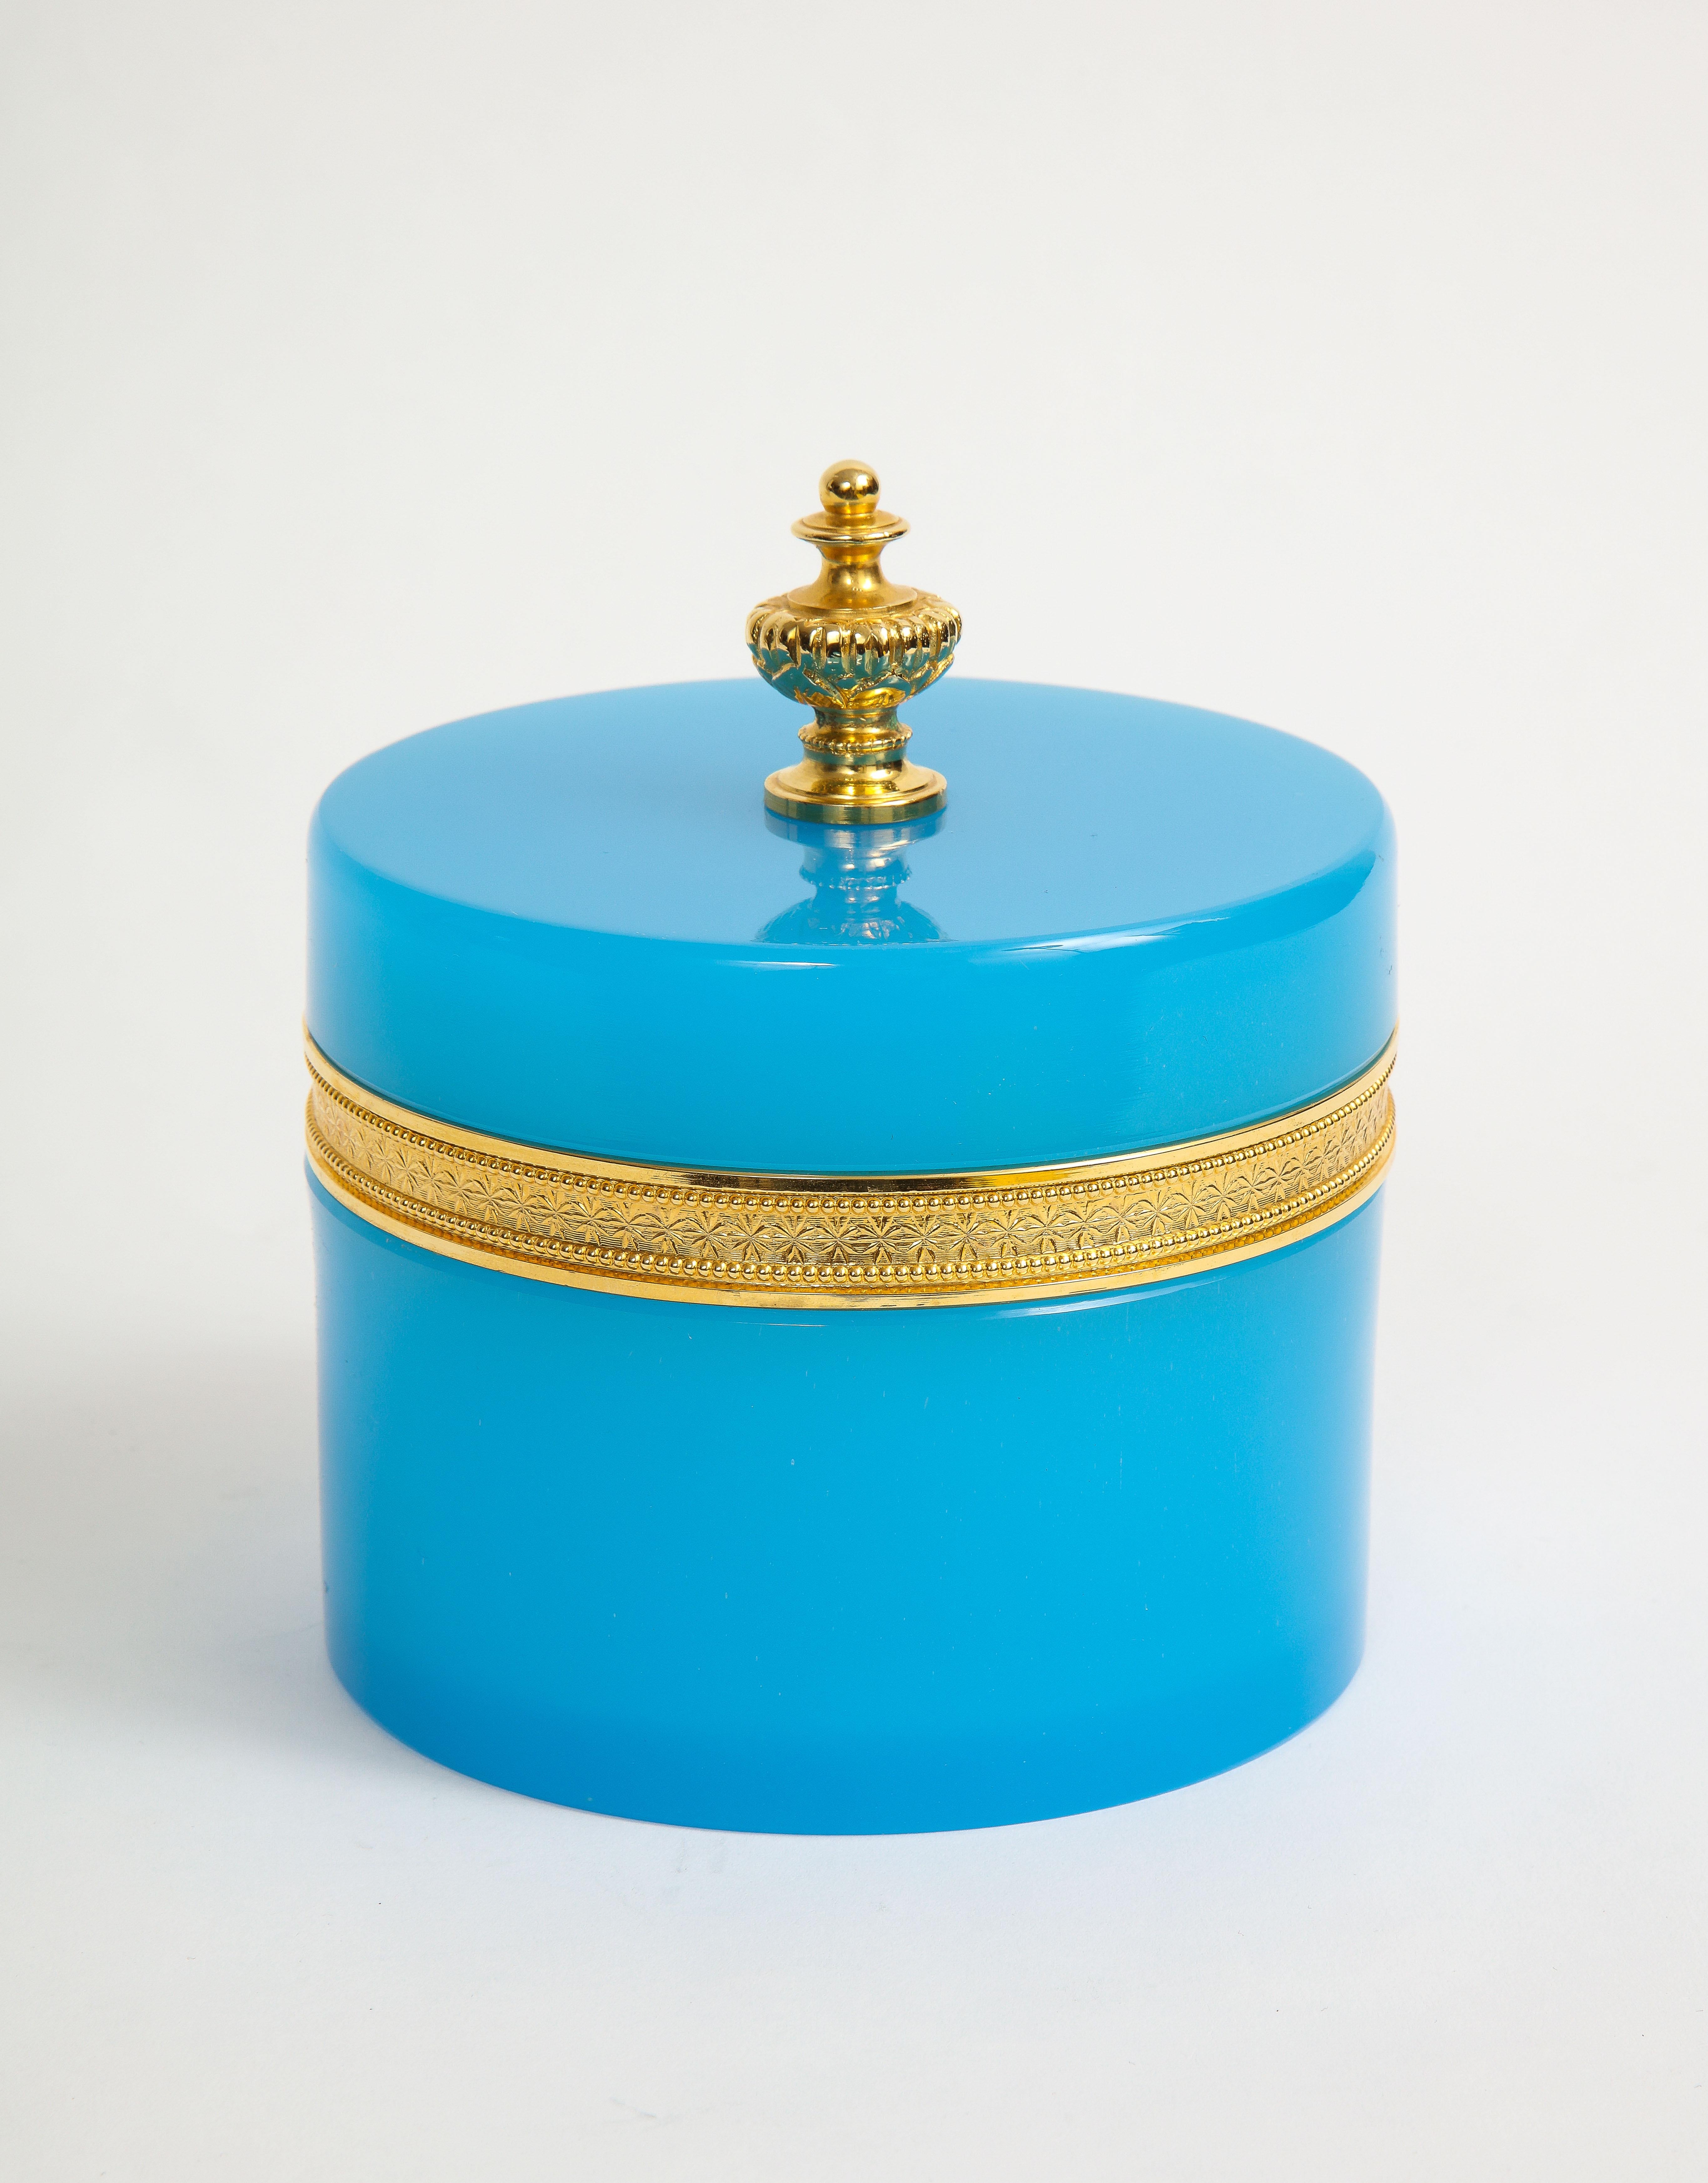 Boîte couverte à fleur en bronze doré et opalescent bleu, avec fleuron en bronze doré. Cette boîte de forme ronde est très inhabituelle avec sa couleur bleue opalescente et sa monture en bronze doré. Le sommet est équipé d'un épi de faîtage en